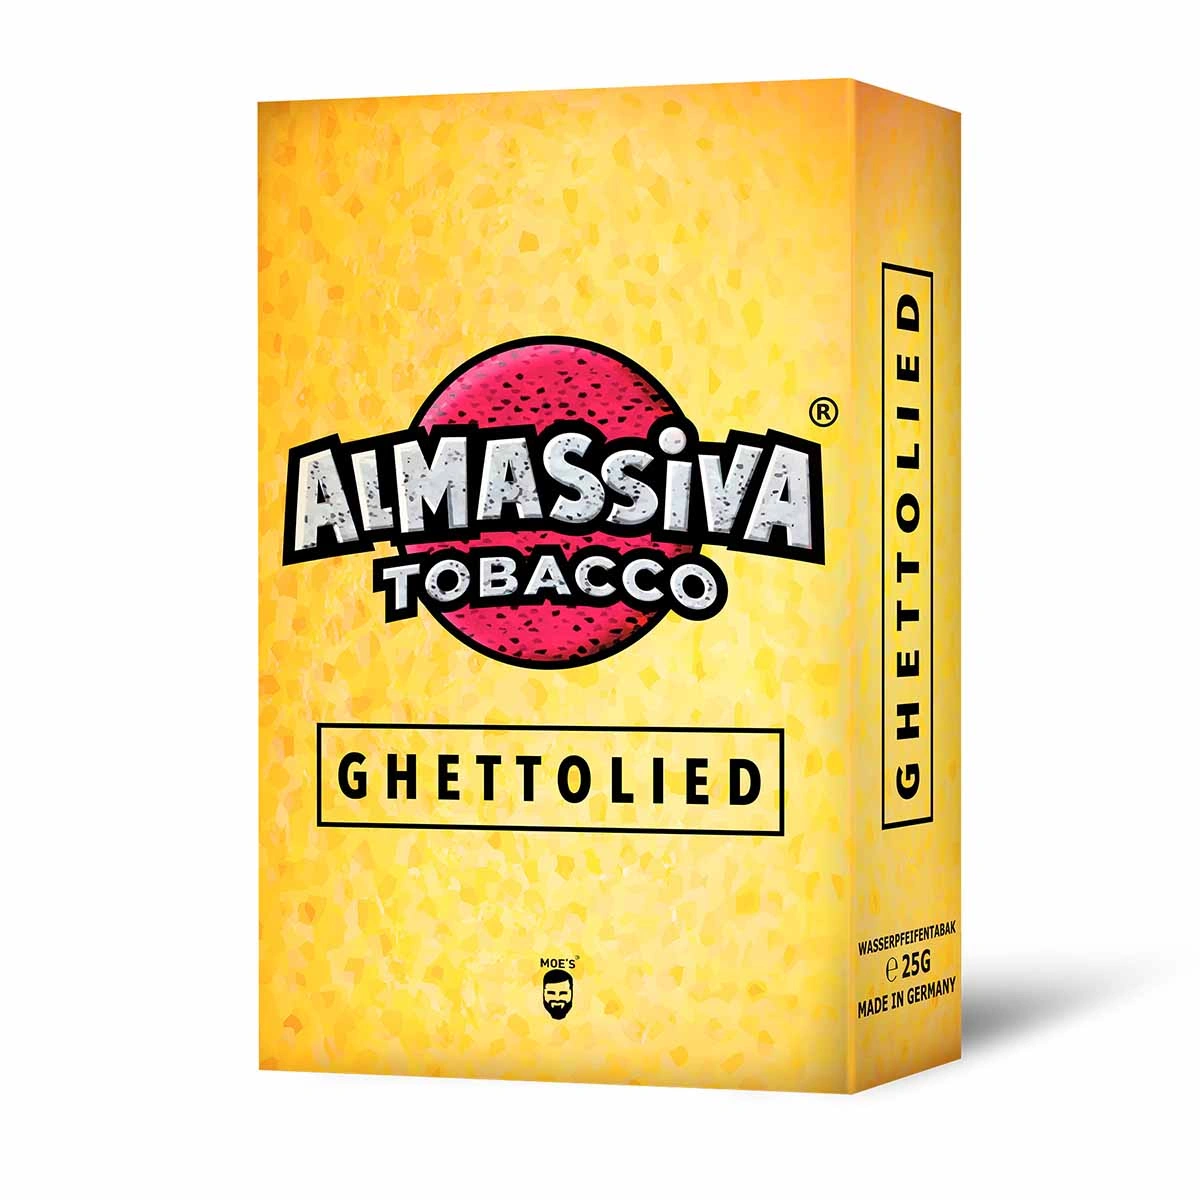 Al Massiva Tobacco 25g Ghettolied